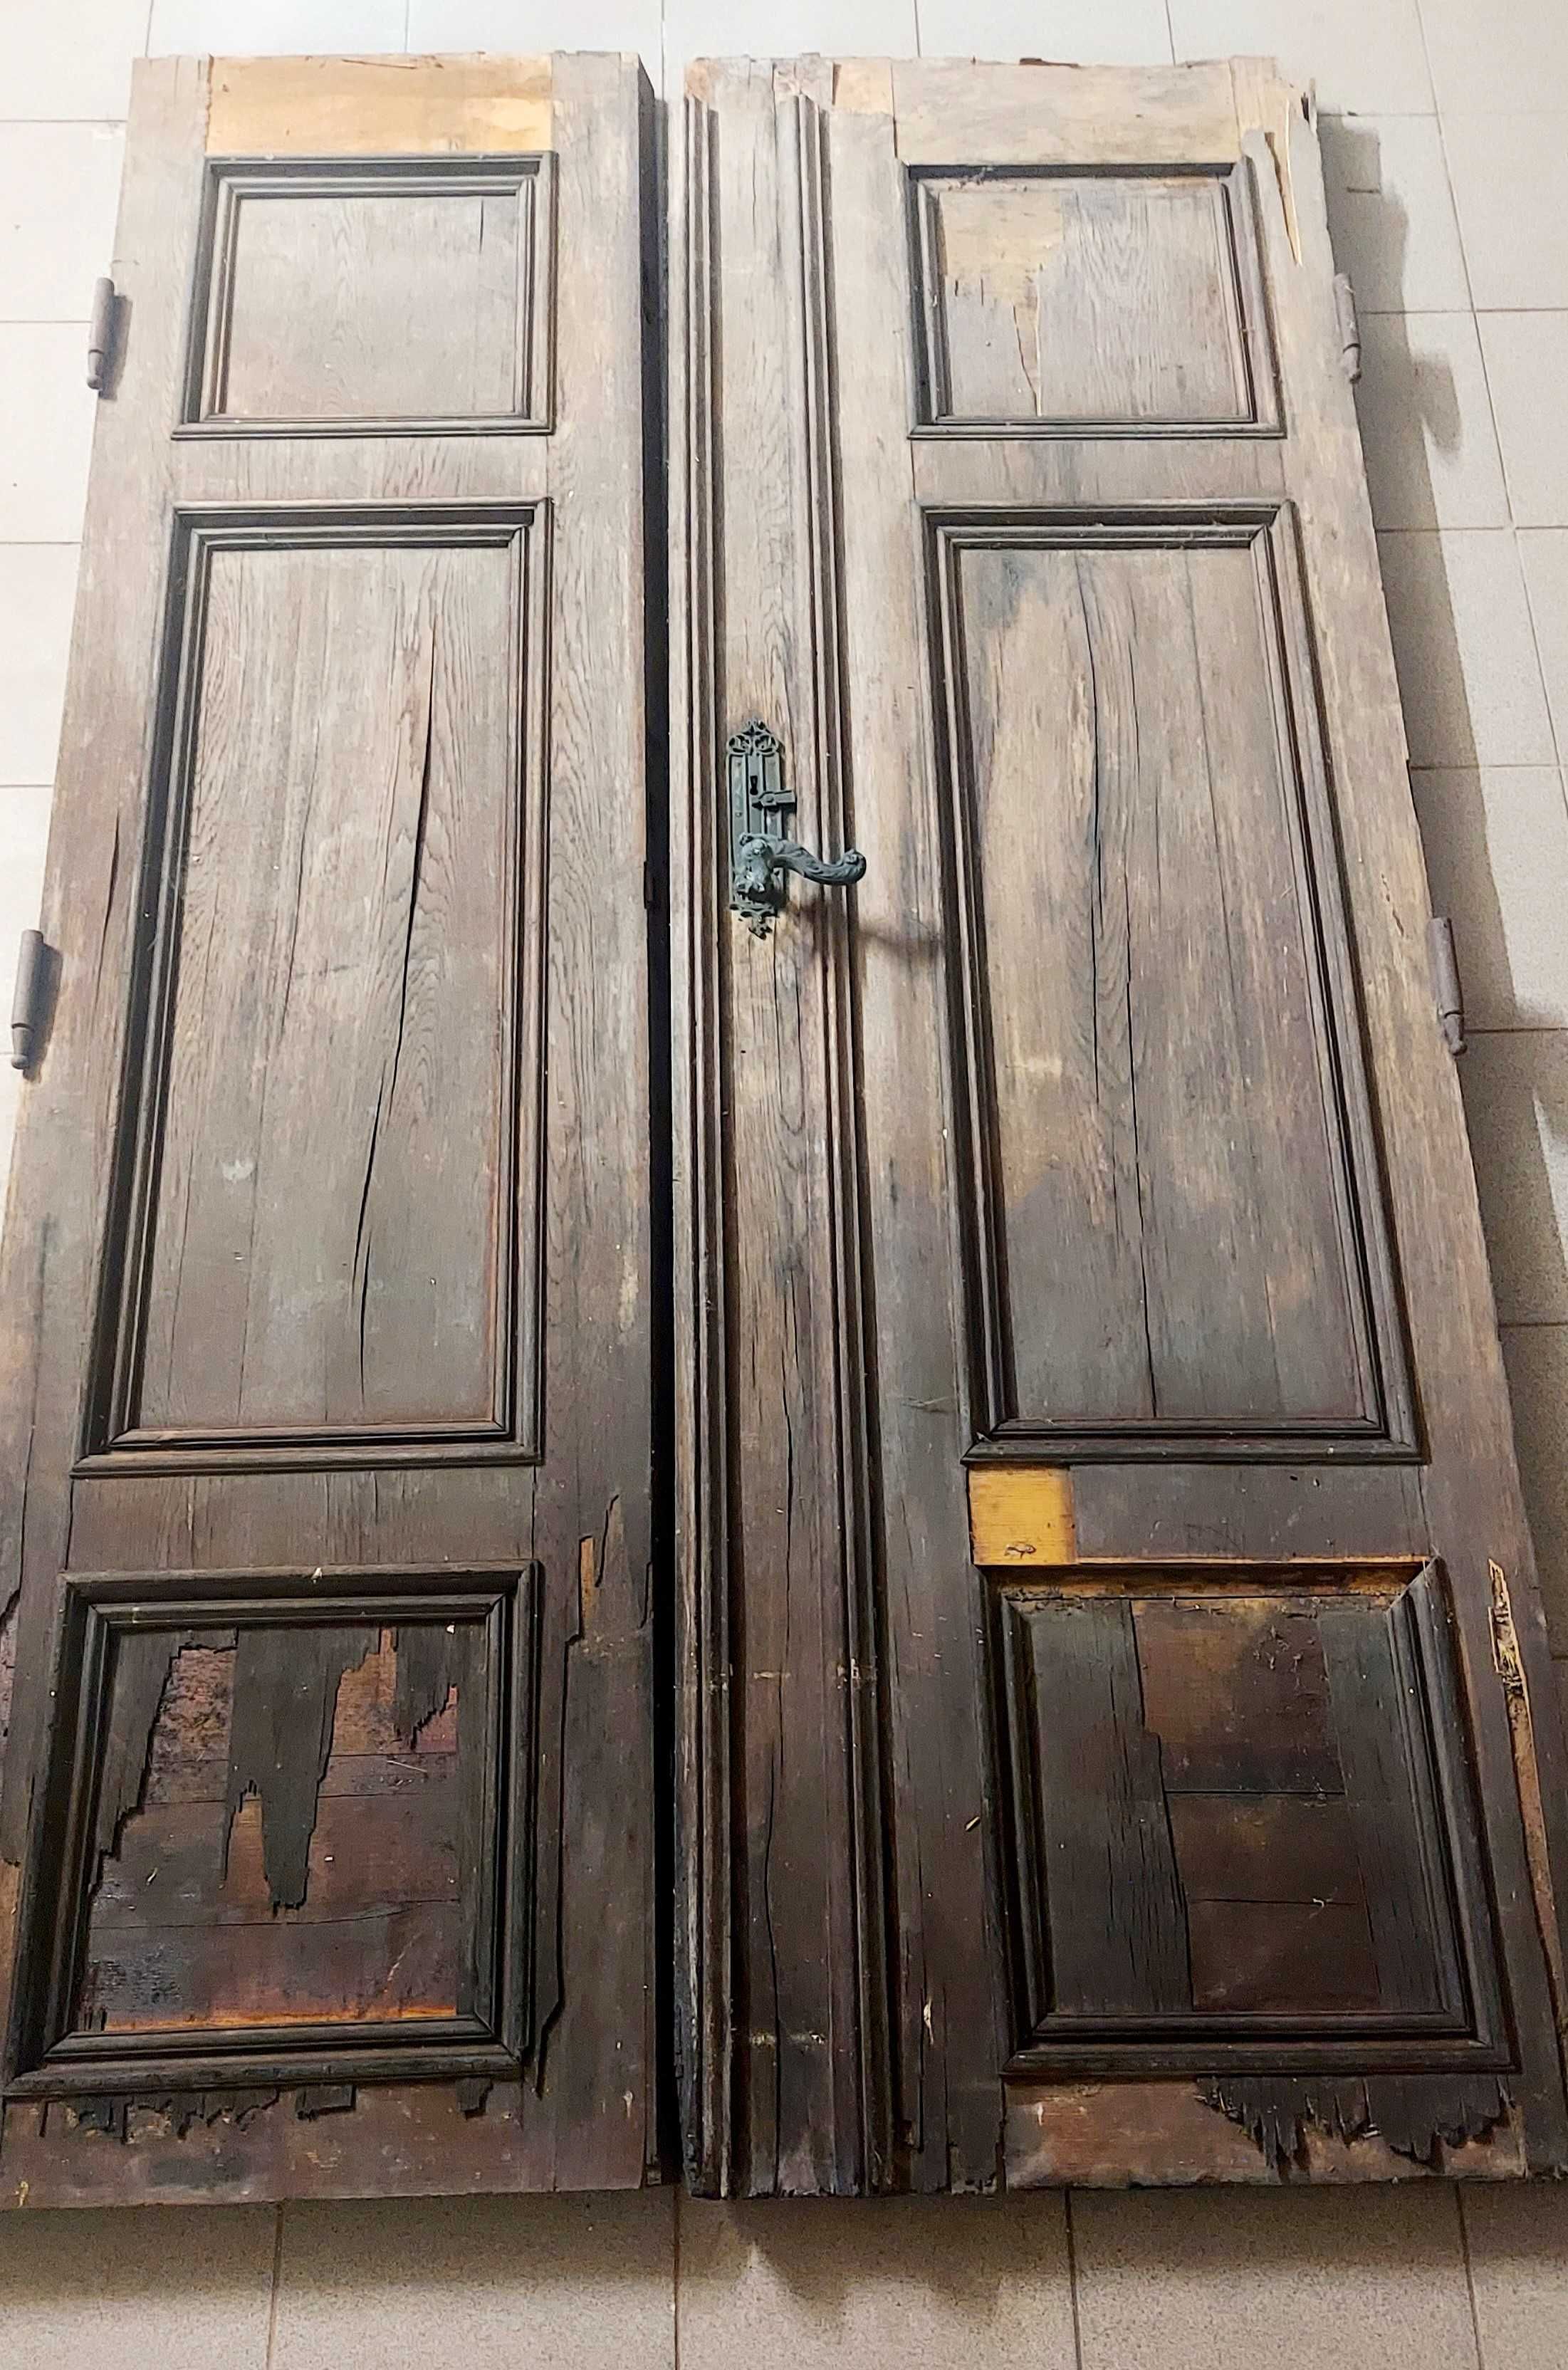 Stare drzwi zamkowe do odnowienia antyk